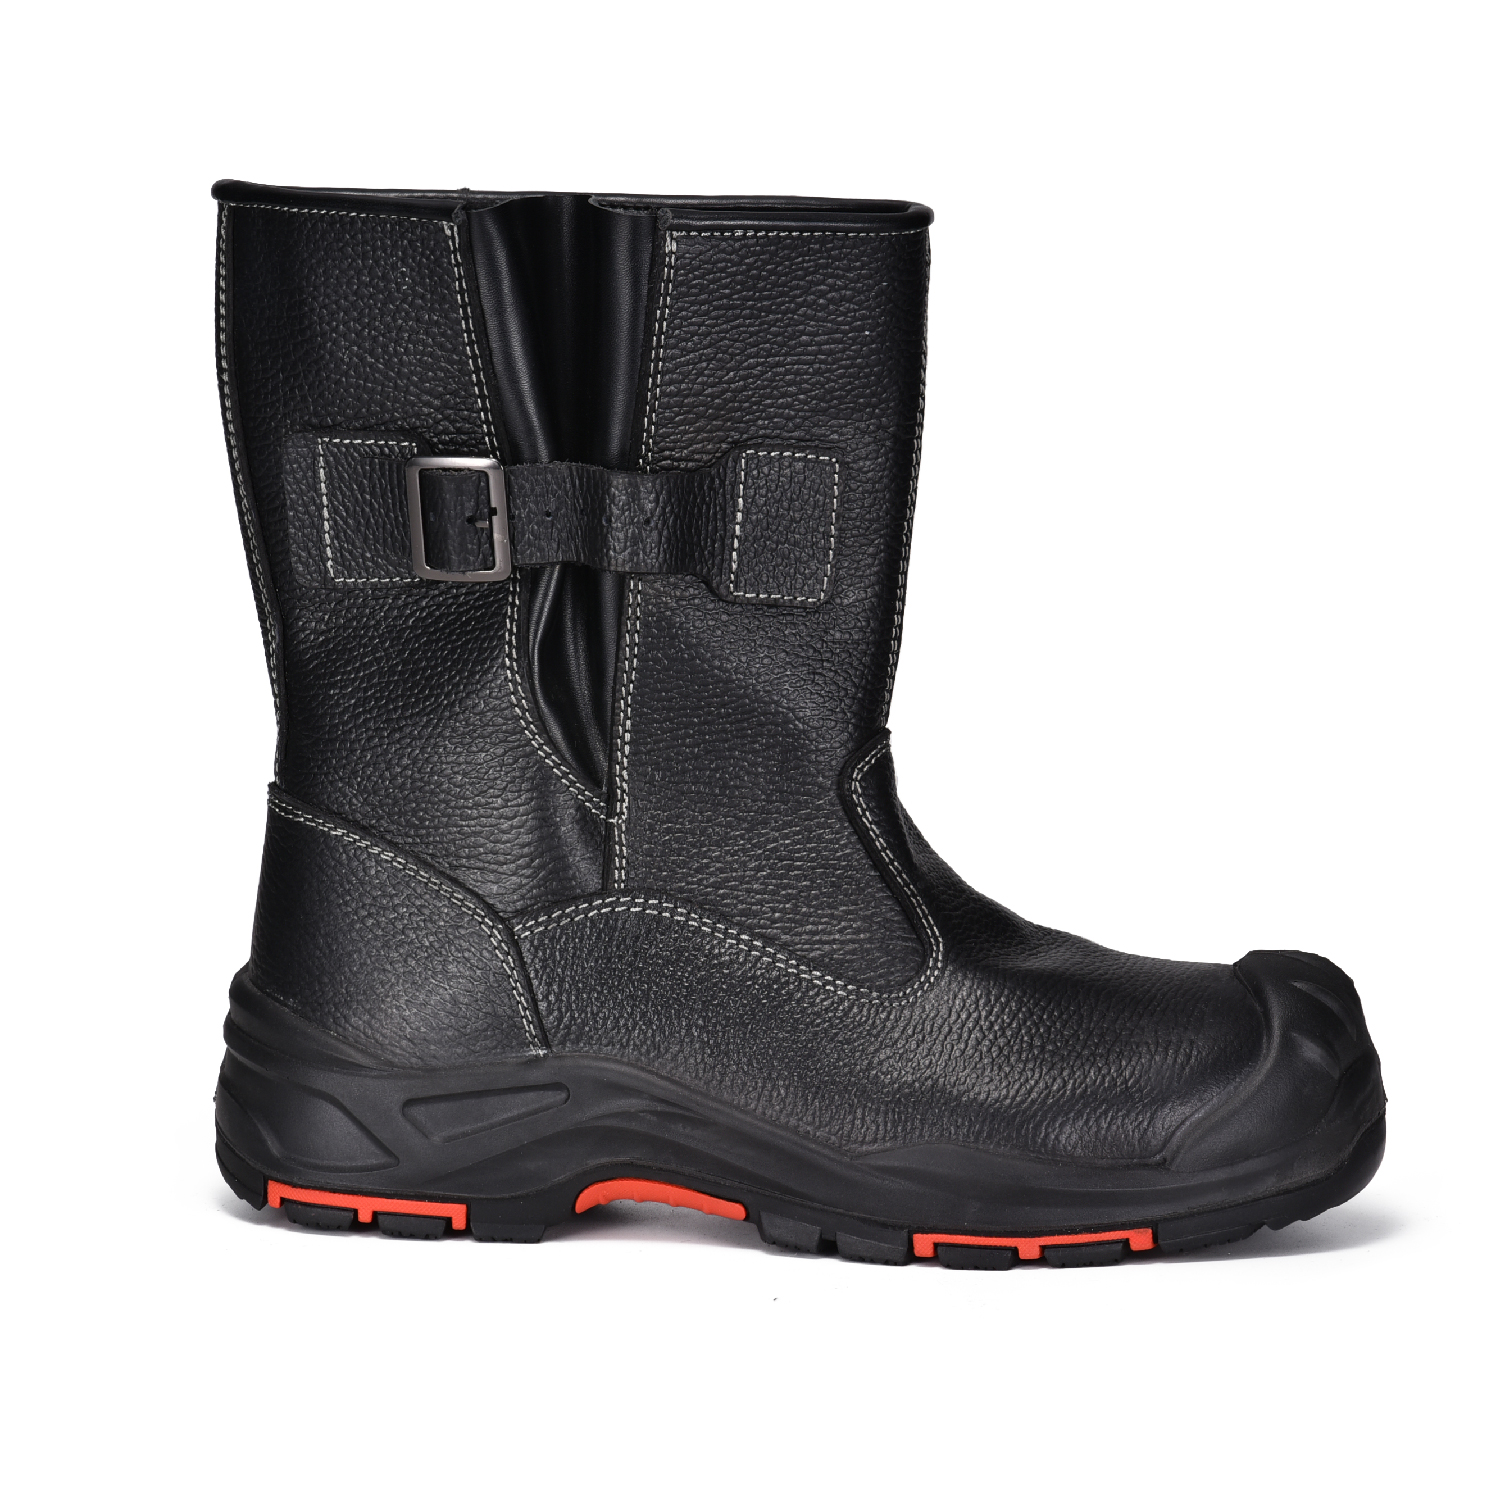 Зимние высокие рабочие ботинки с композитным носком на меховой подкладке для холодной погоды H-9425 Короткие